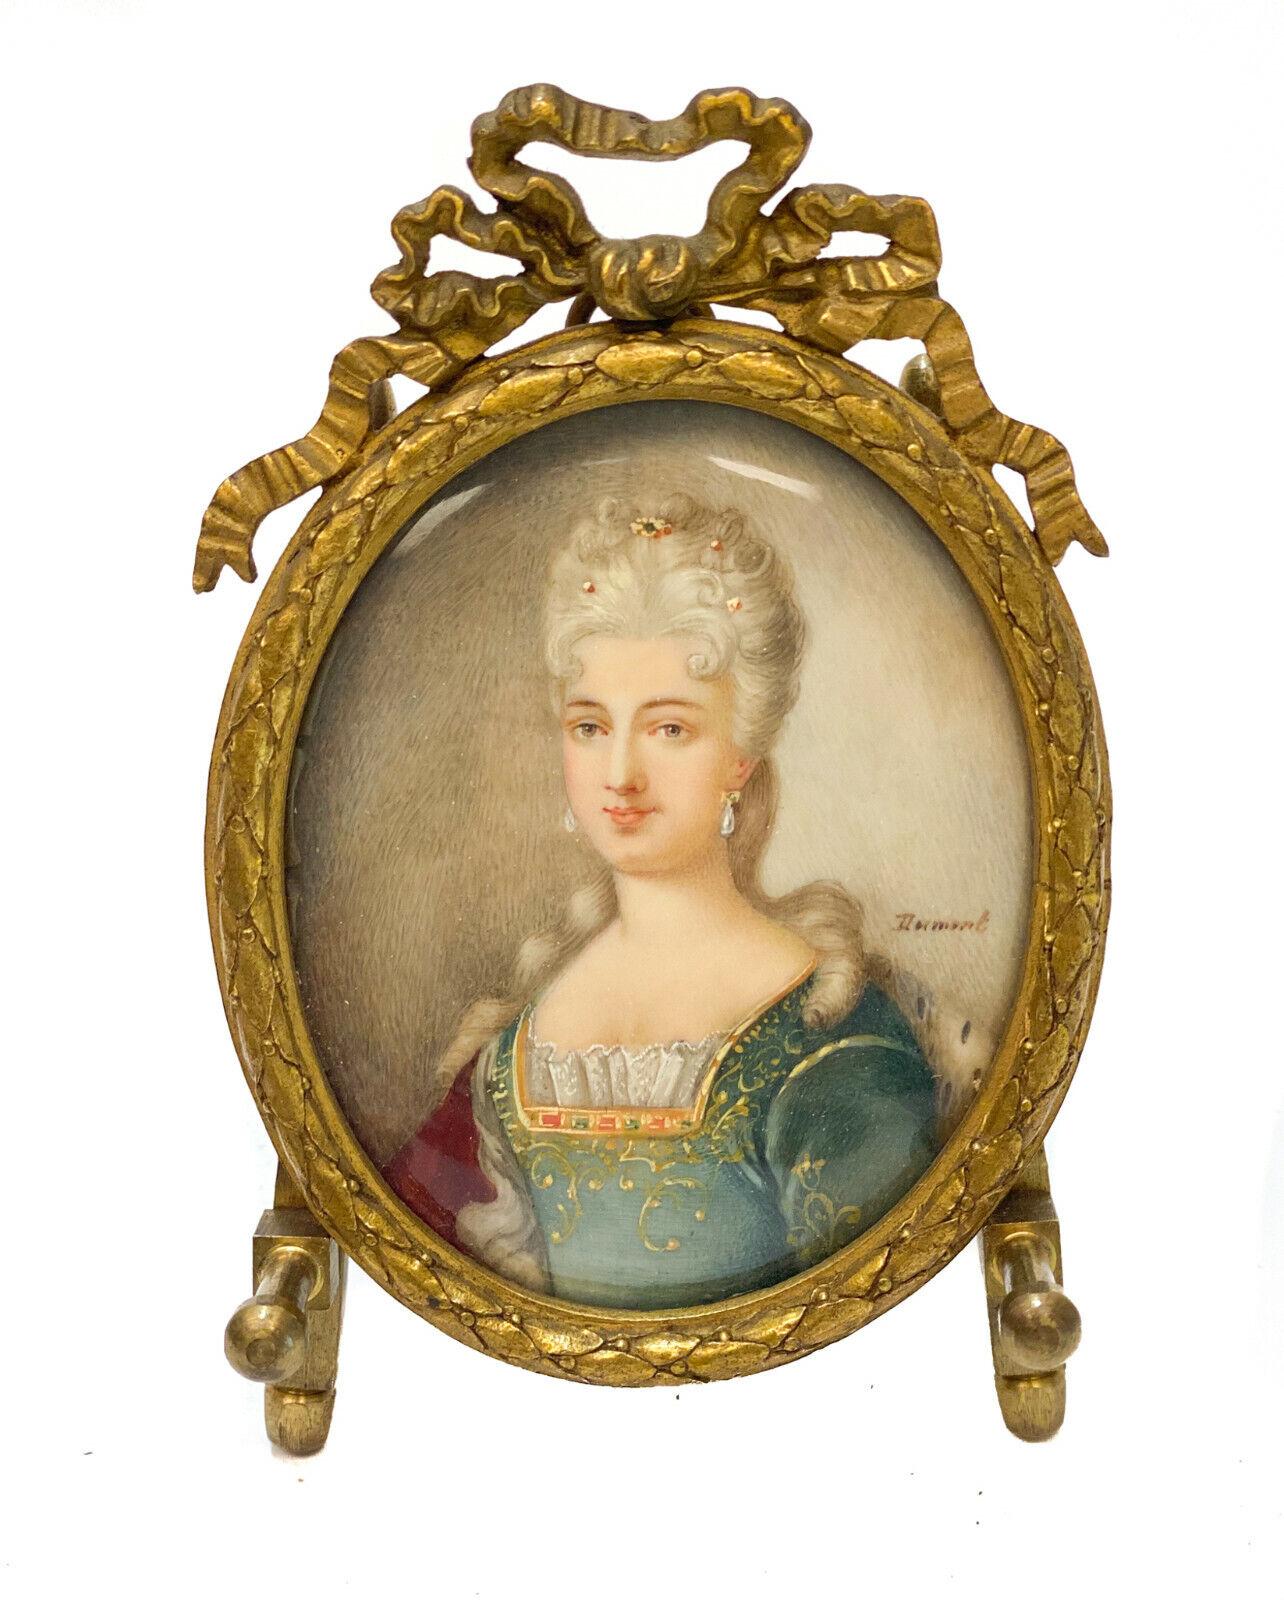 Paire de portraits miniatures à la gouache d'une belle, 19e siècle

Les portraits représentent des beautés aux cheveux blancs dans des vêtements royaux de dentelle et de velours. L'artiste a signé 